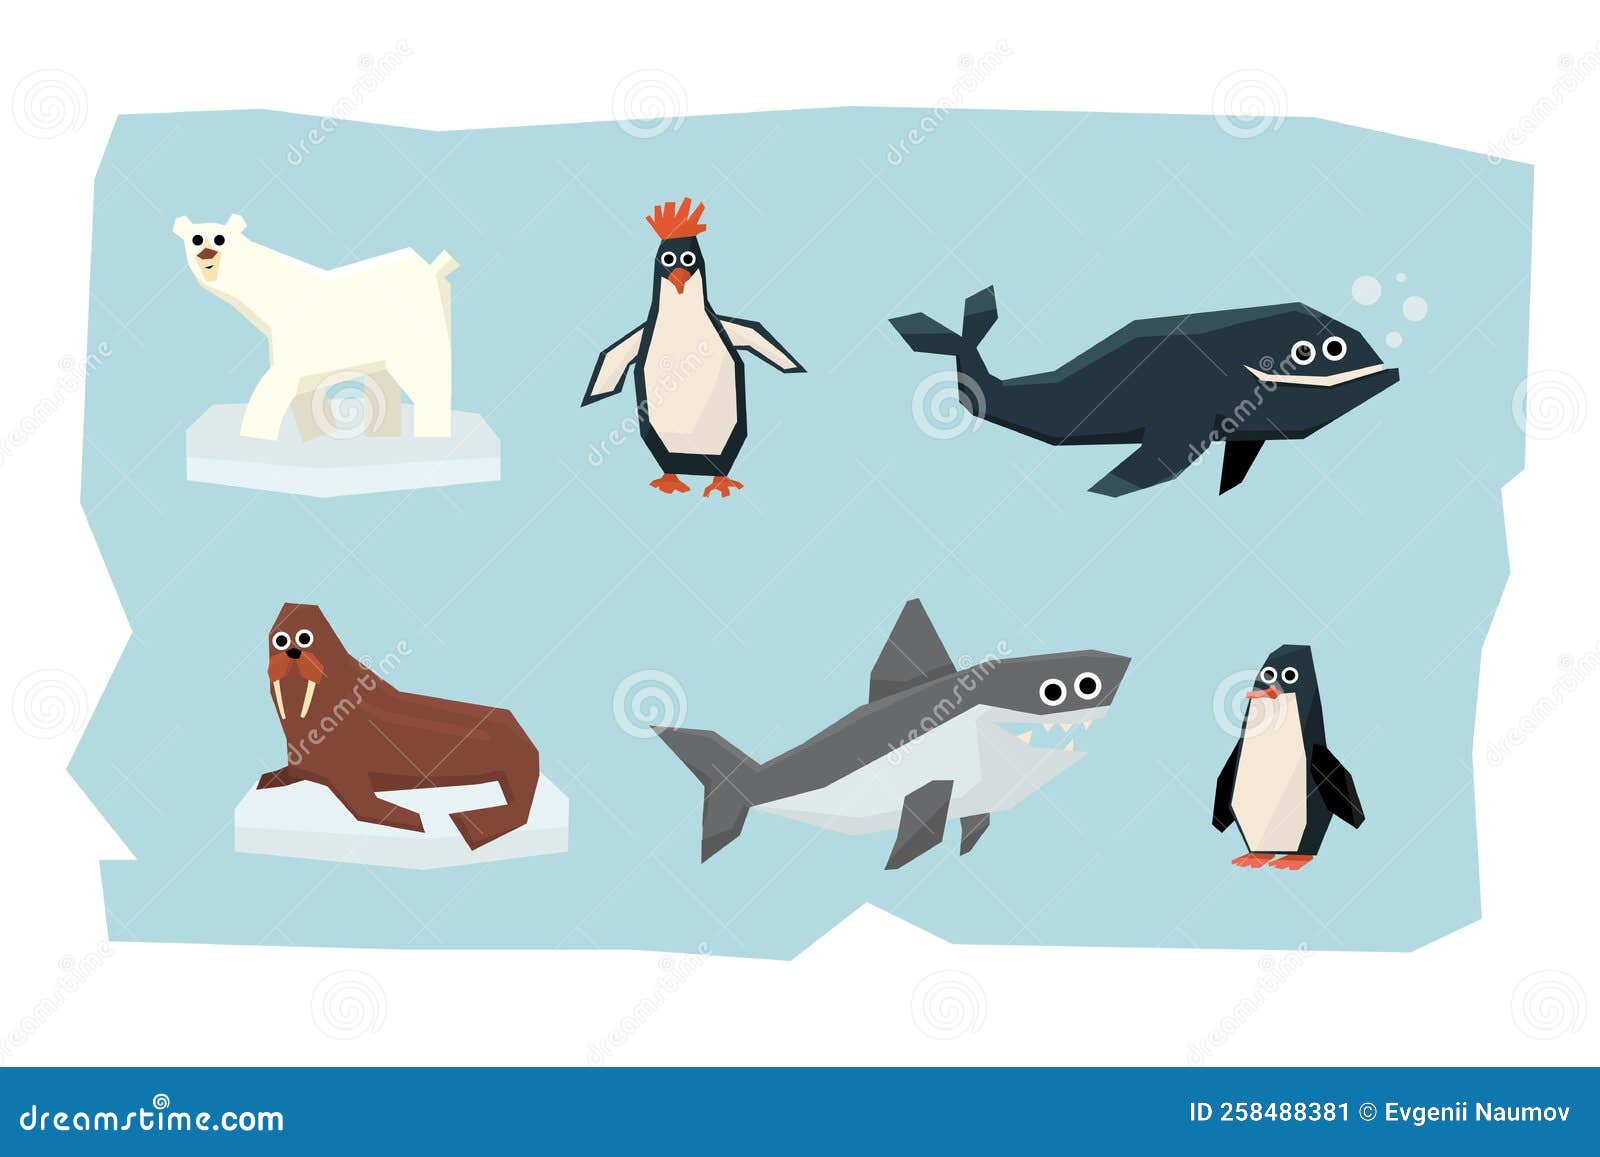 Arctic Animal with Penguin, Polar Bear, Walrus, Whale and Shark Vector ...